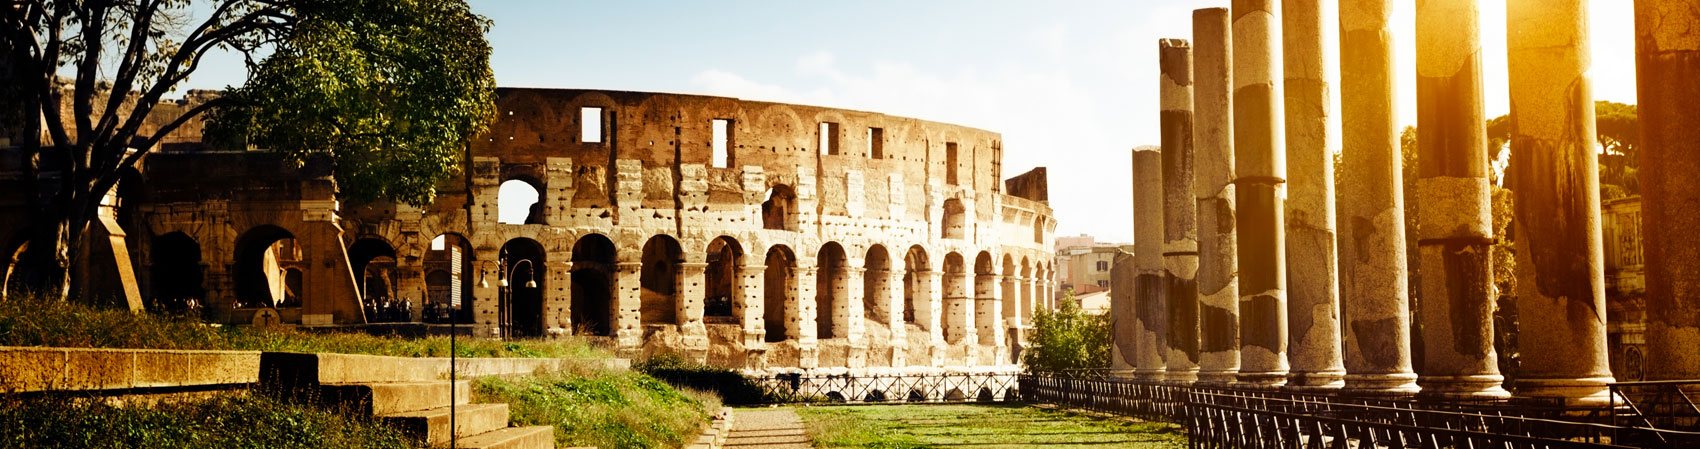 Detalles del Coliseo y del Foro Romano en Roma